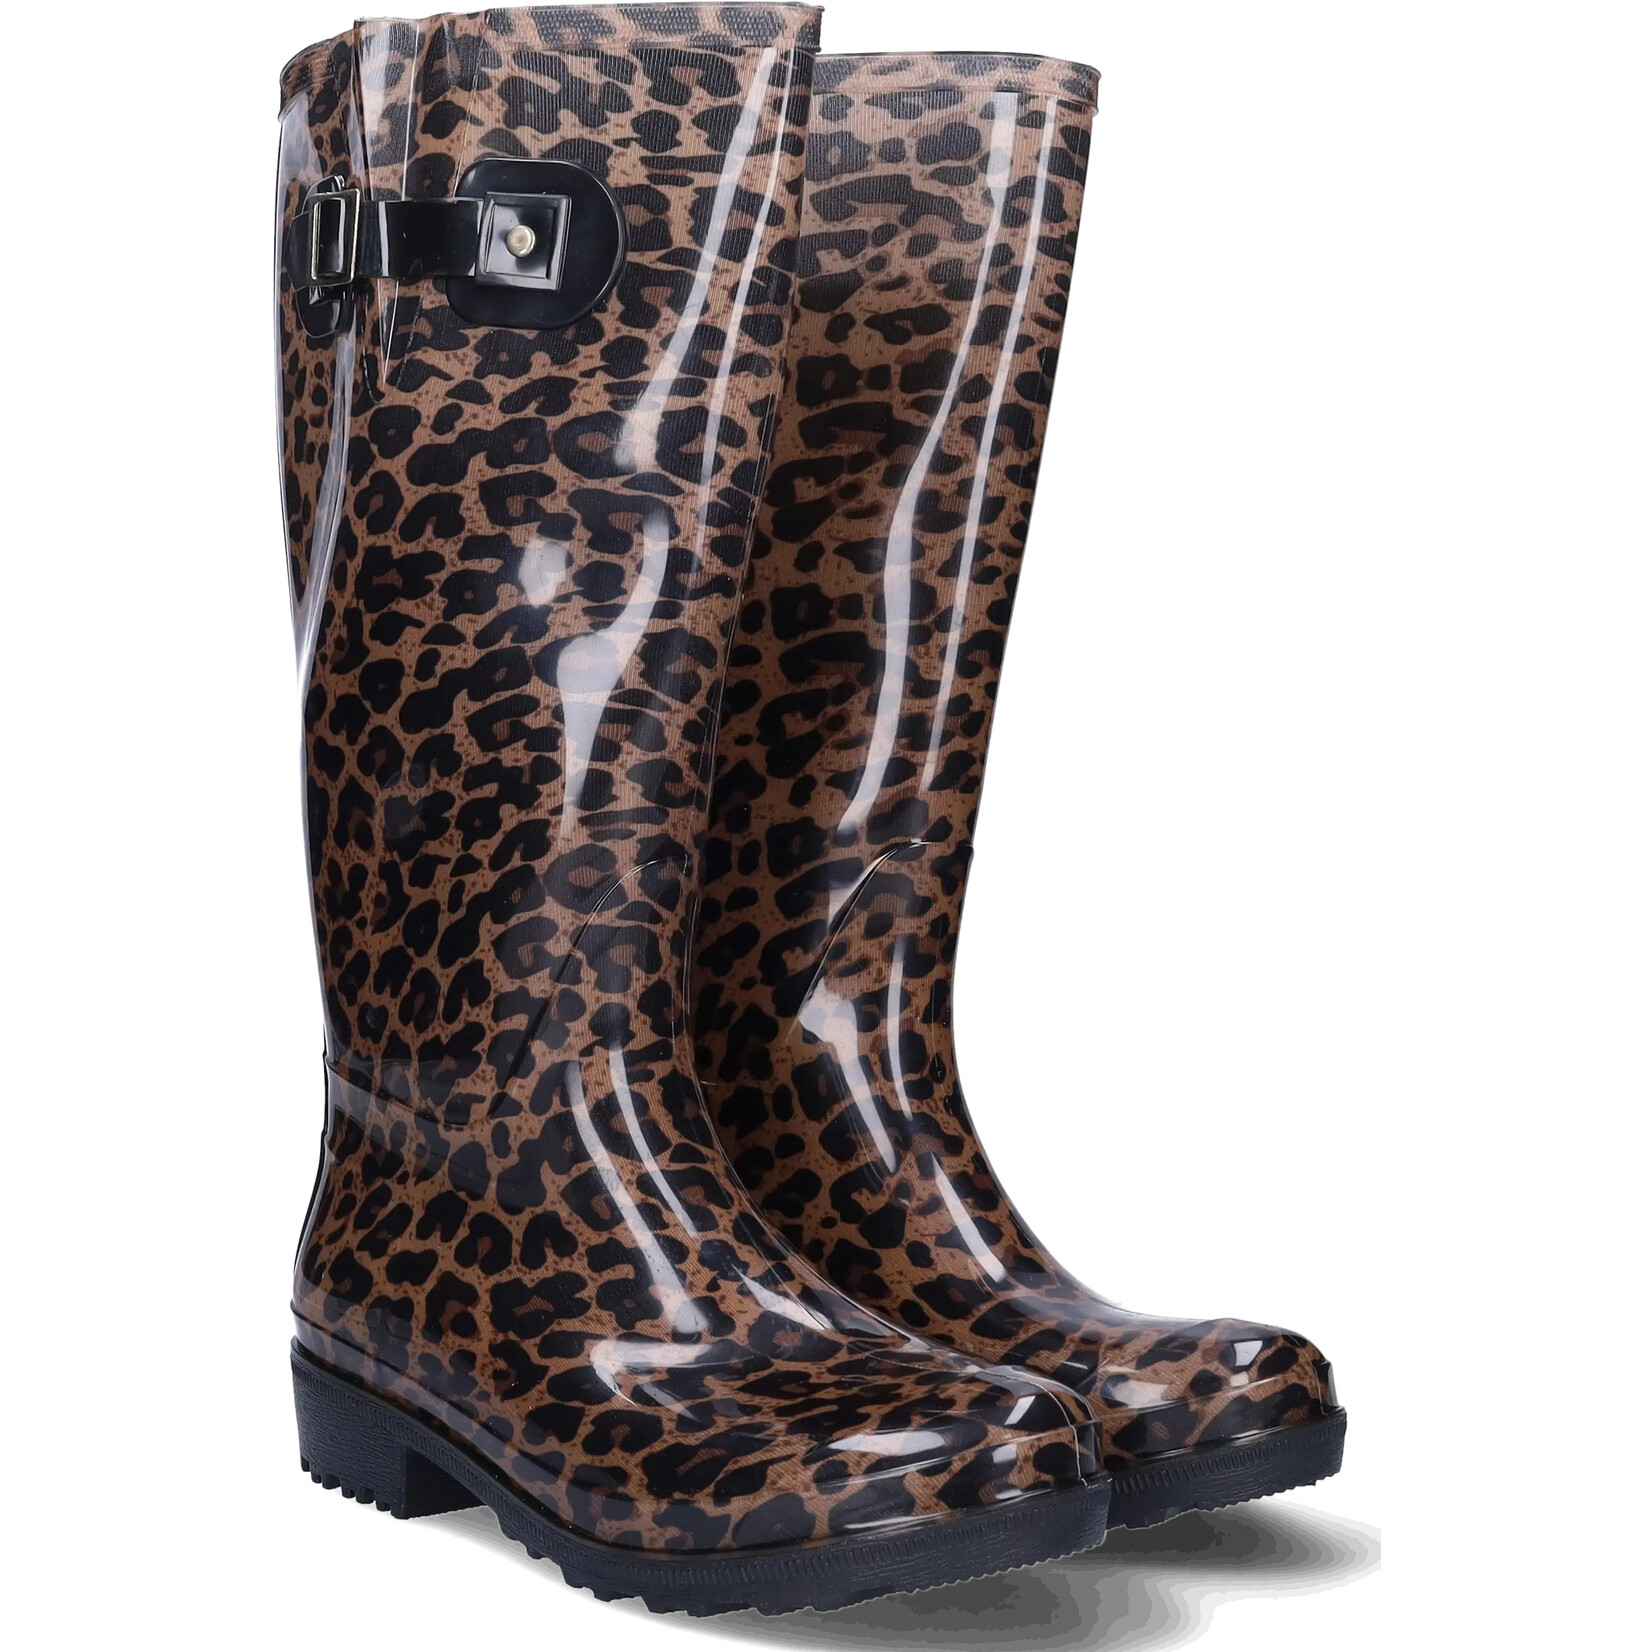 JJ Footwear Wellies - Braun/Beige Leopard